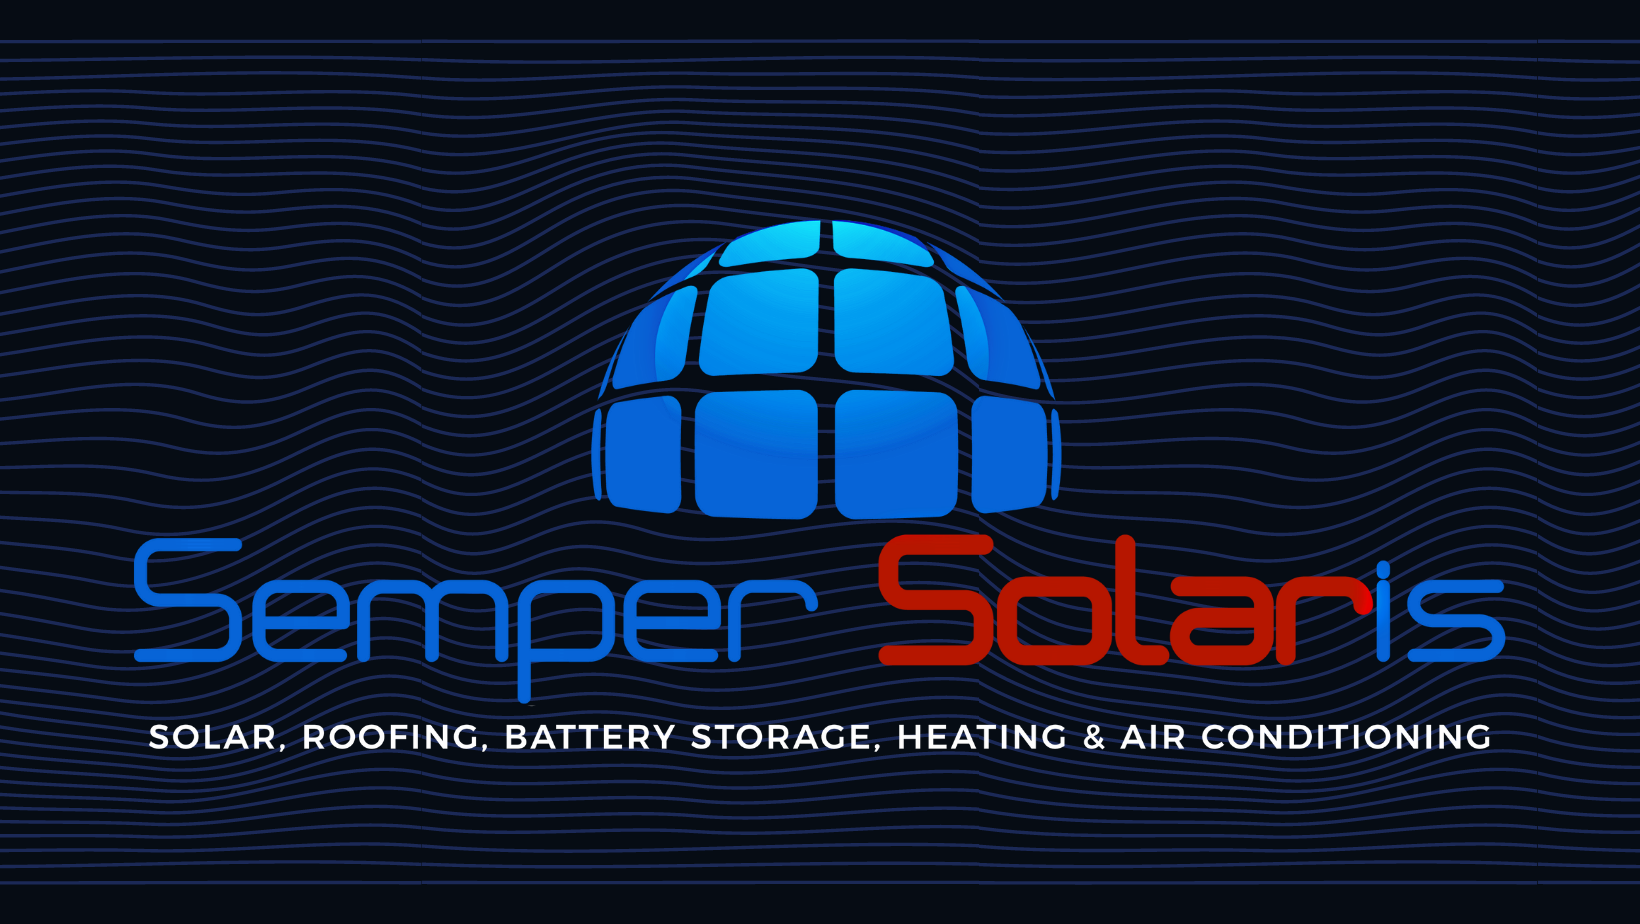 Semper Solaris featured image